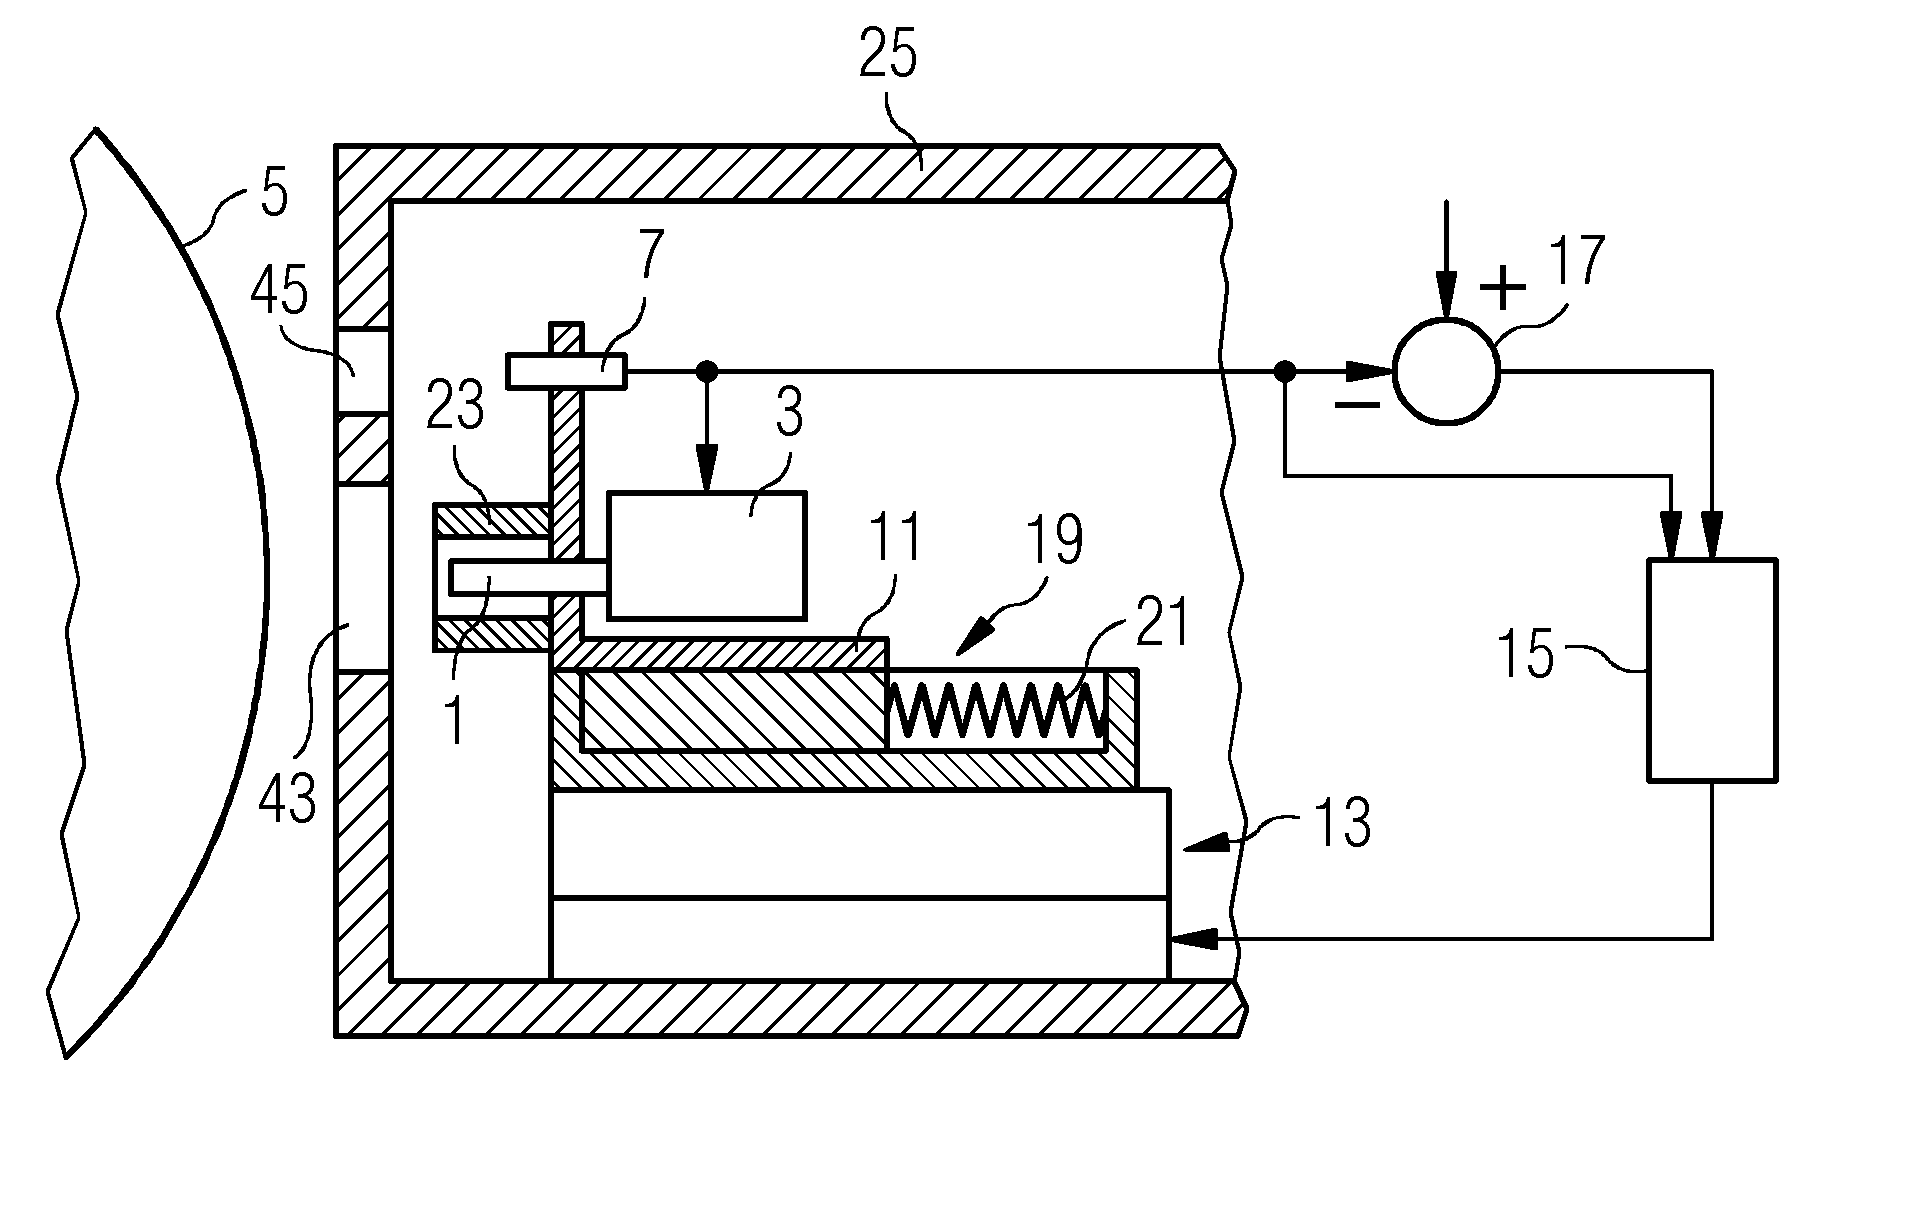 Torque sensor arrangement and shaft comprising a torque sensor arrangement